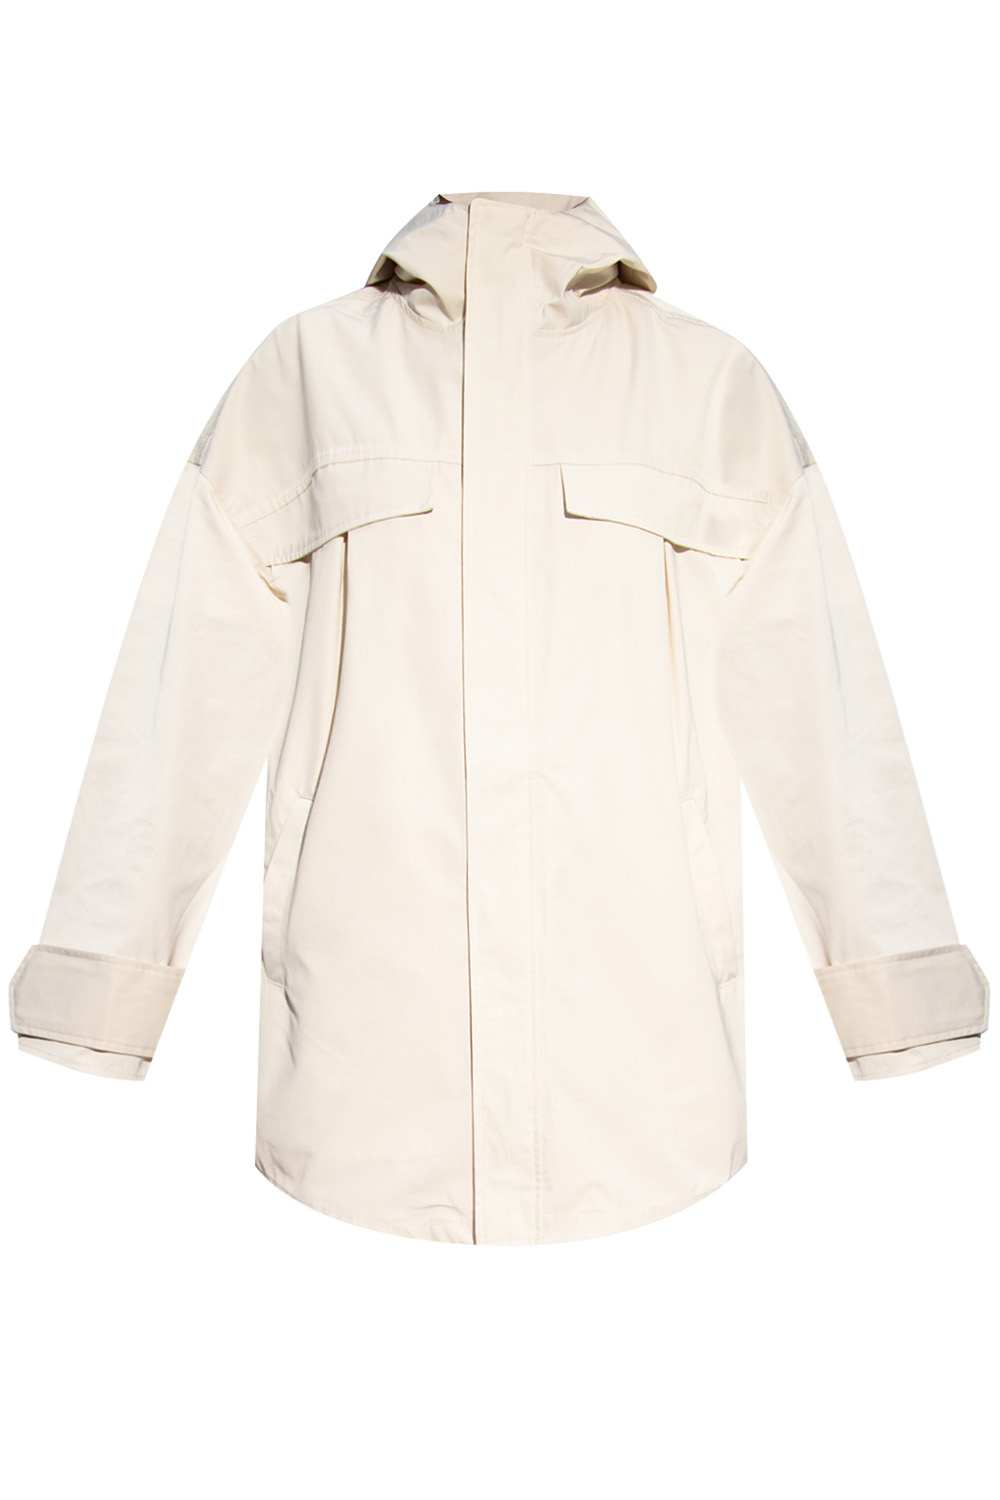 Holzweiler Oversize maxi jacket